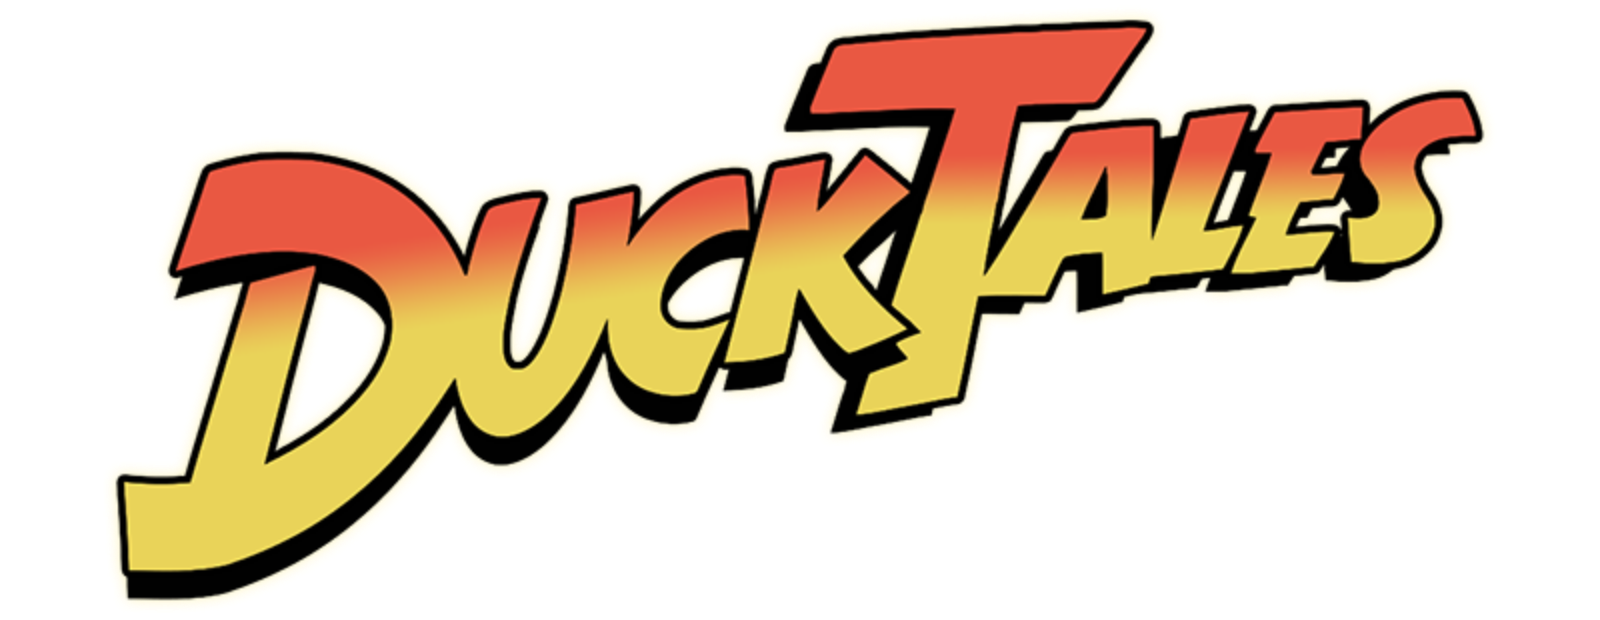 DuckTales 2017